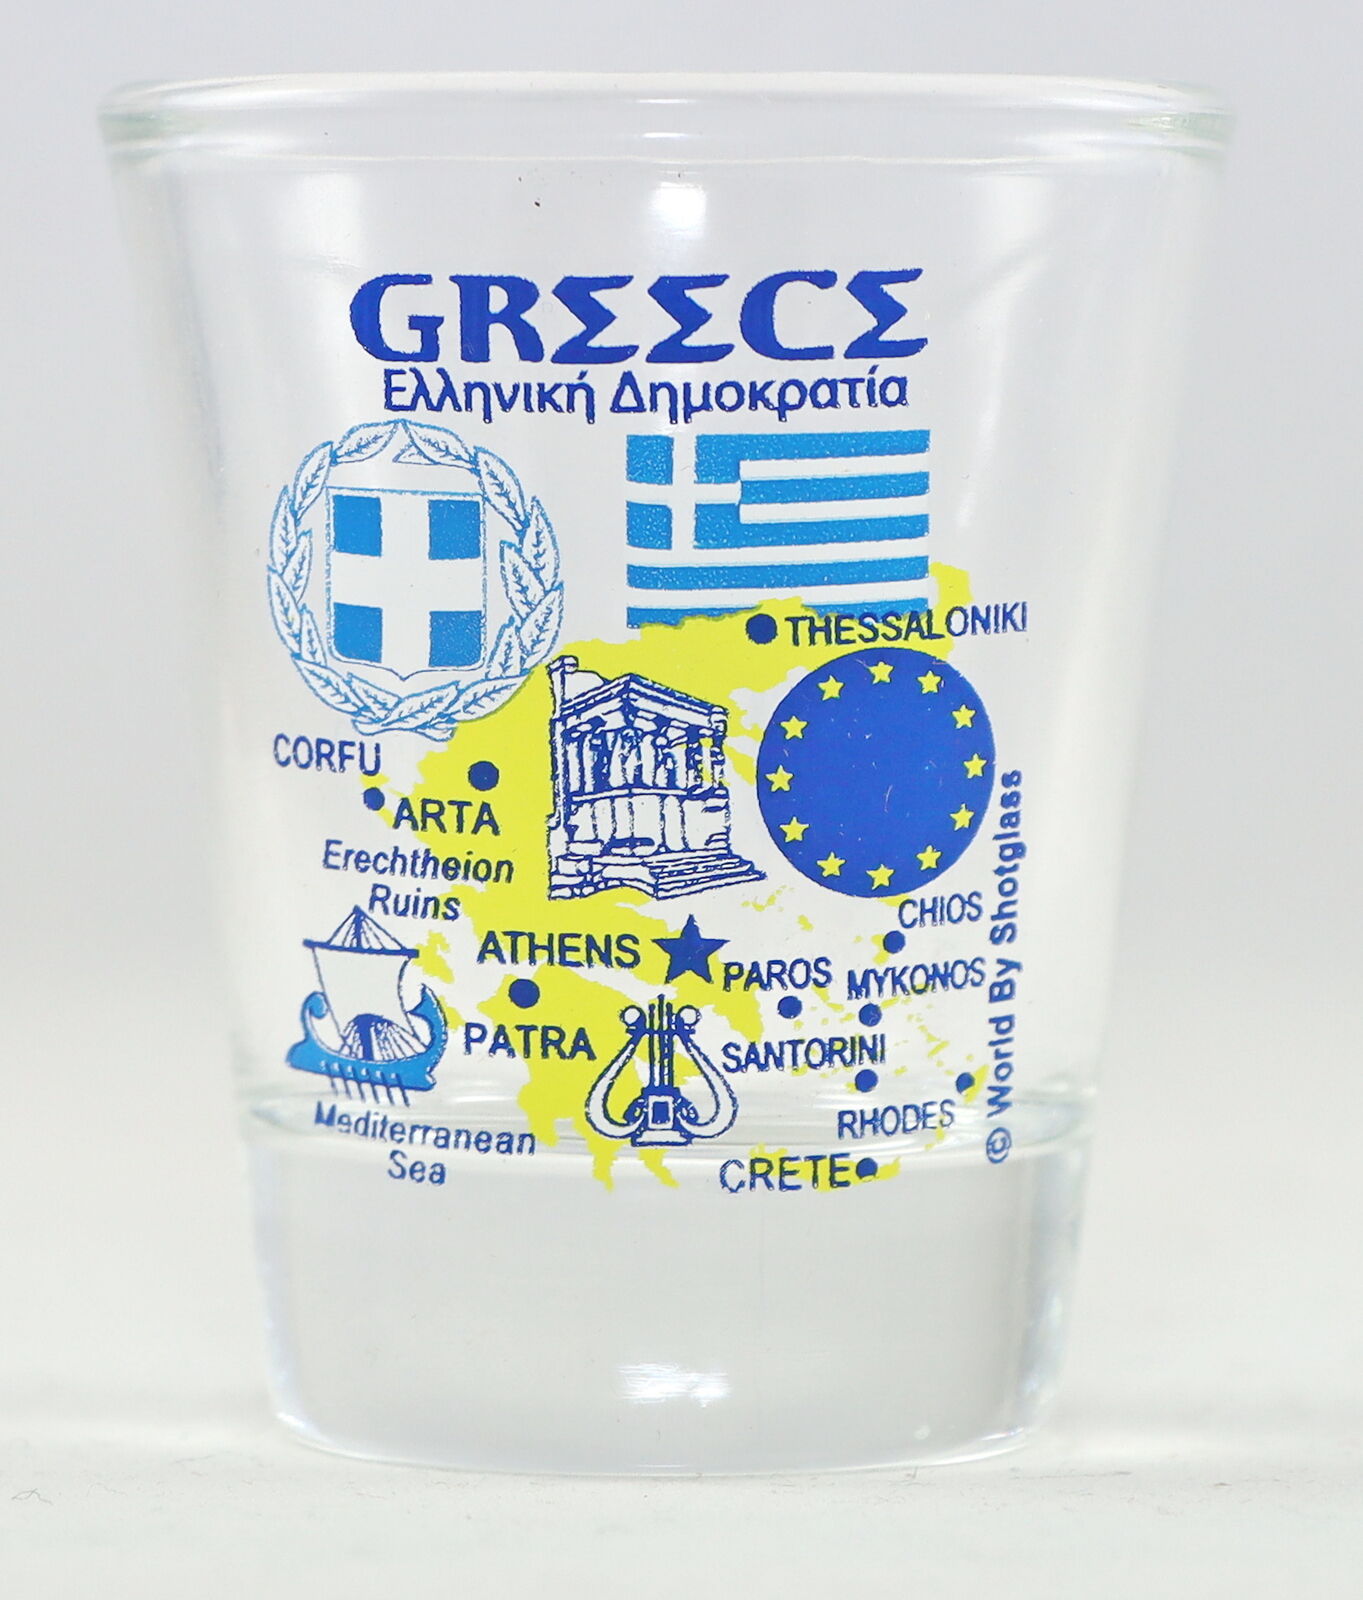 GREECE EU SERIES LANDMARKS AND ICONS COLLAGE SHOT GLASS SHOTGLASS